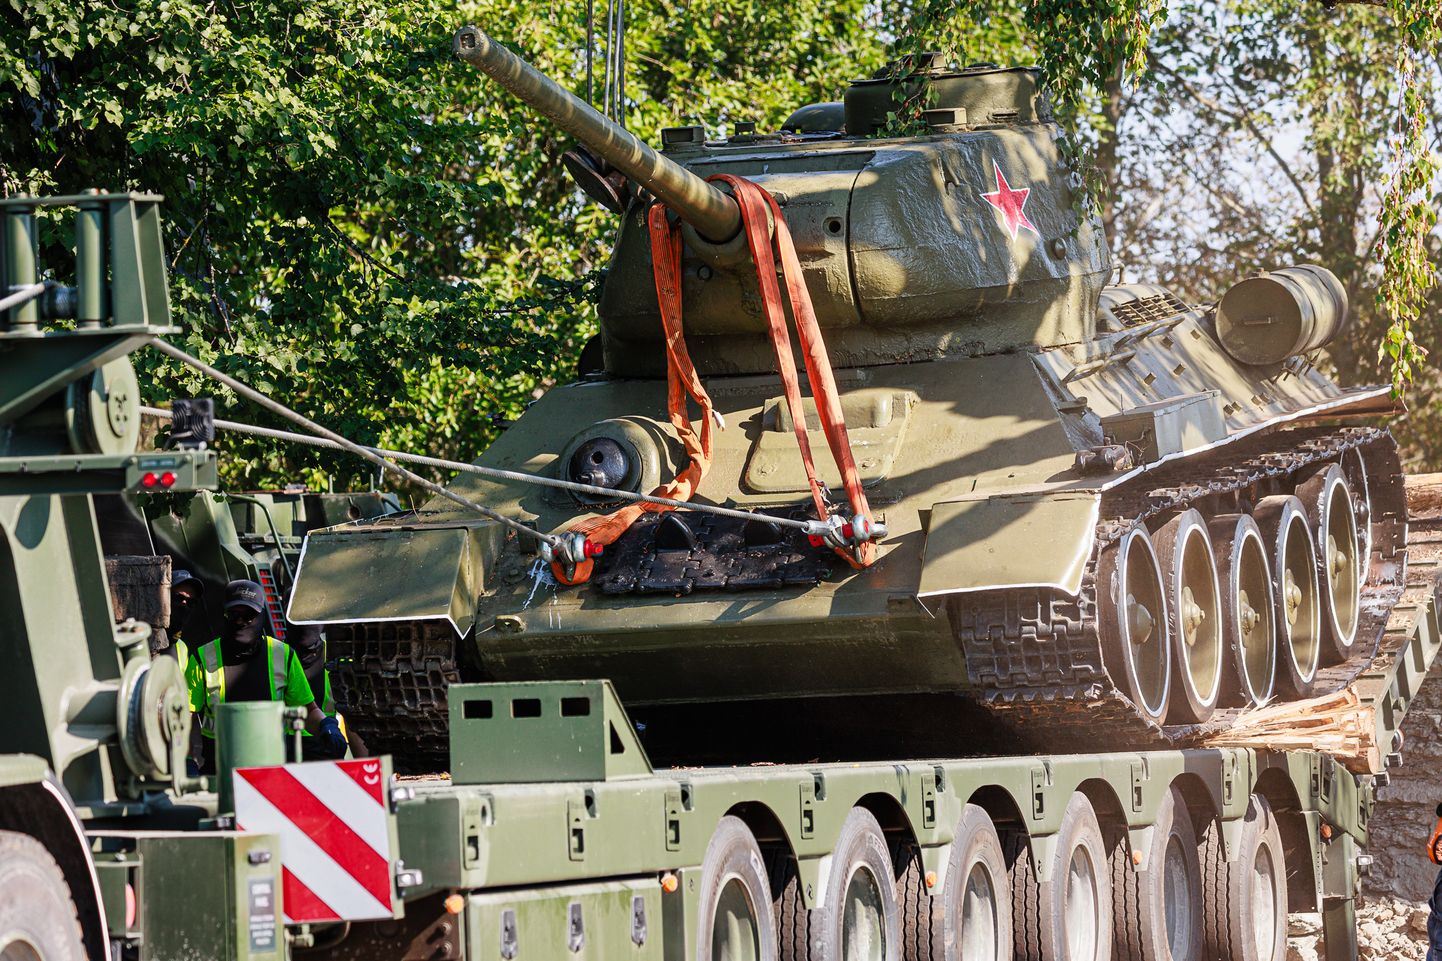 Нарвский танк, у которого давно не вращаются колеса и вообще ничего, сопротивляясь тяге рабочей техники 16 августа 2022 года сполз с постамента.